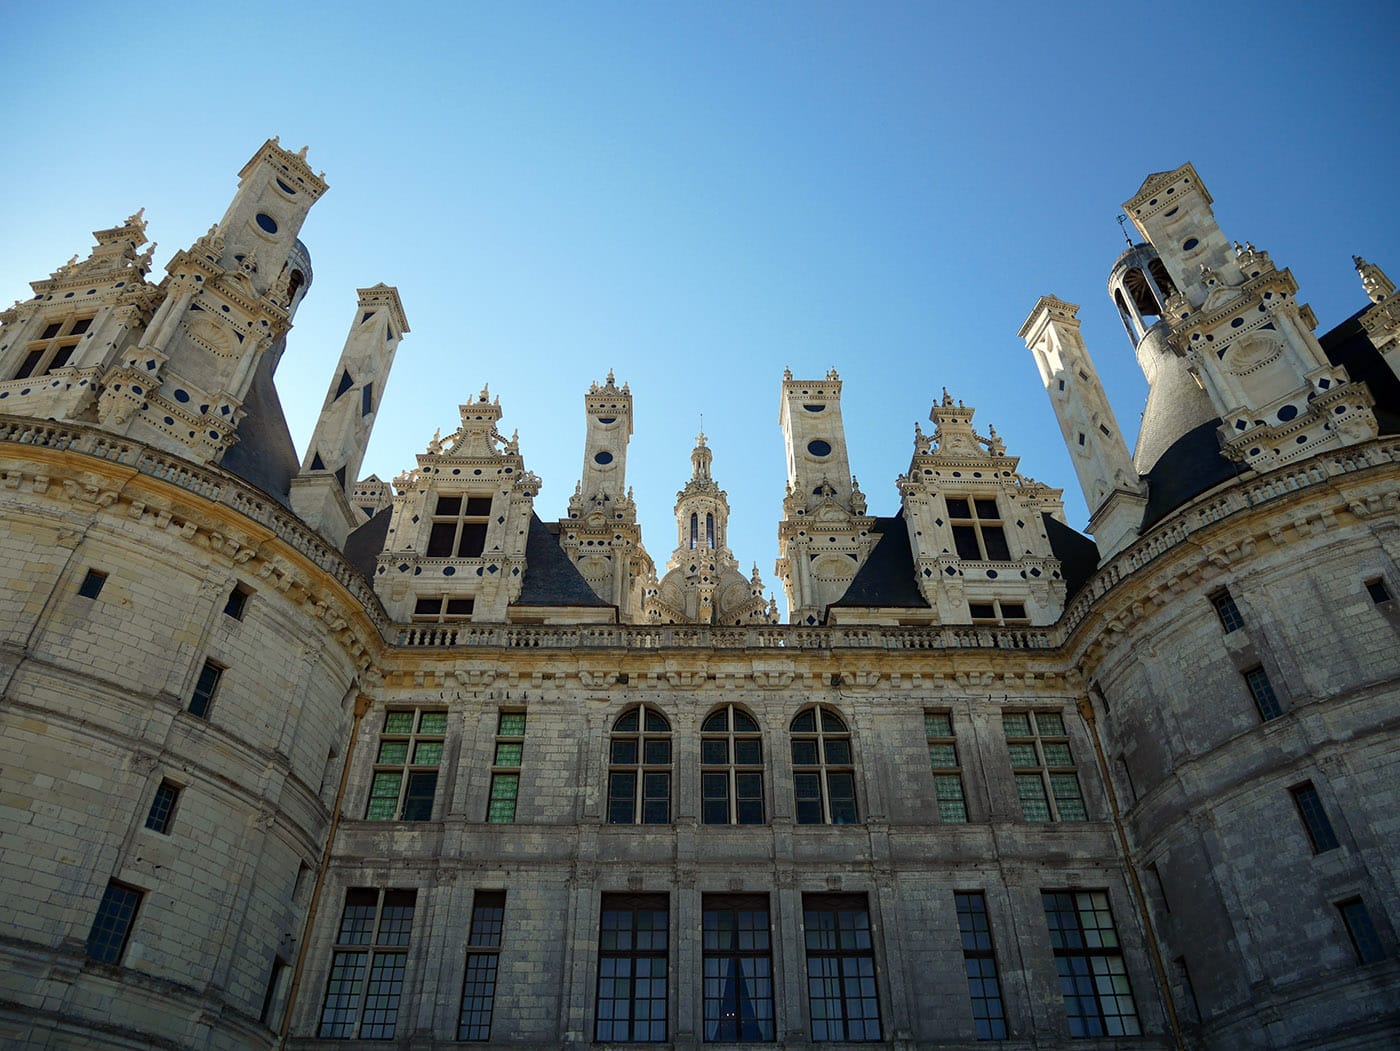 Chateau de Chambord - World History Encyclopedia